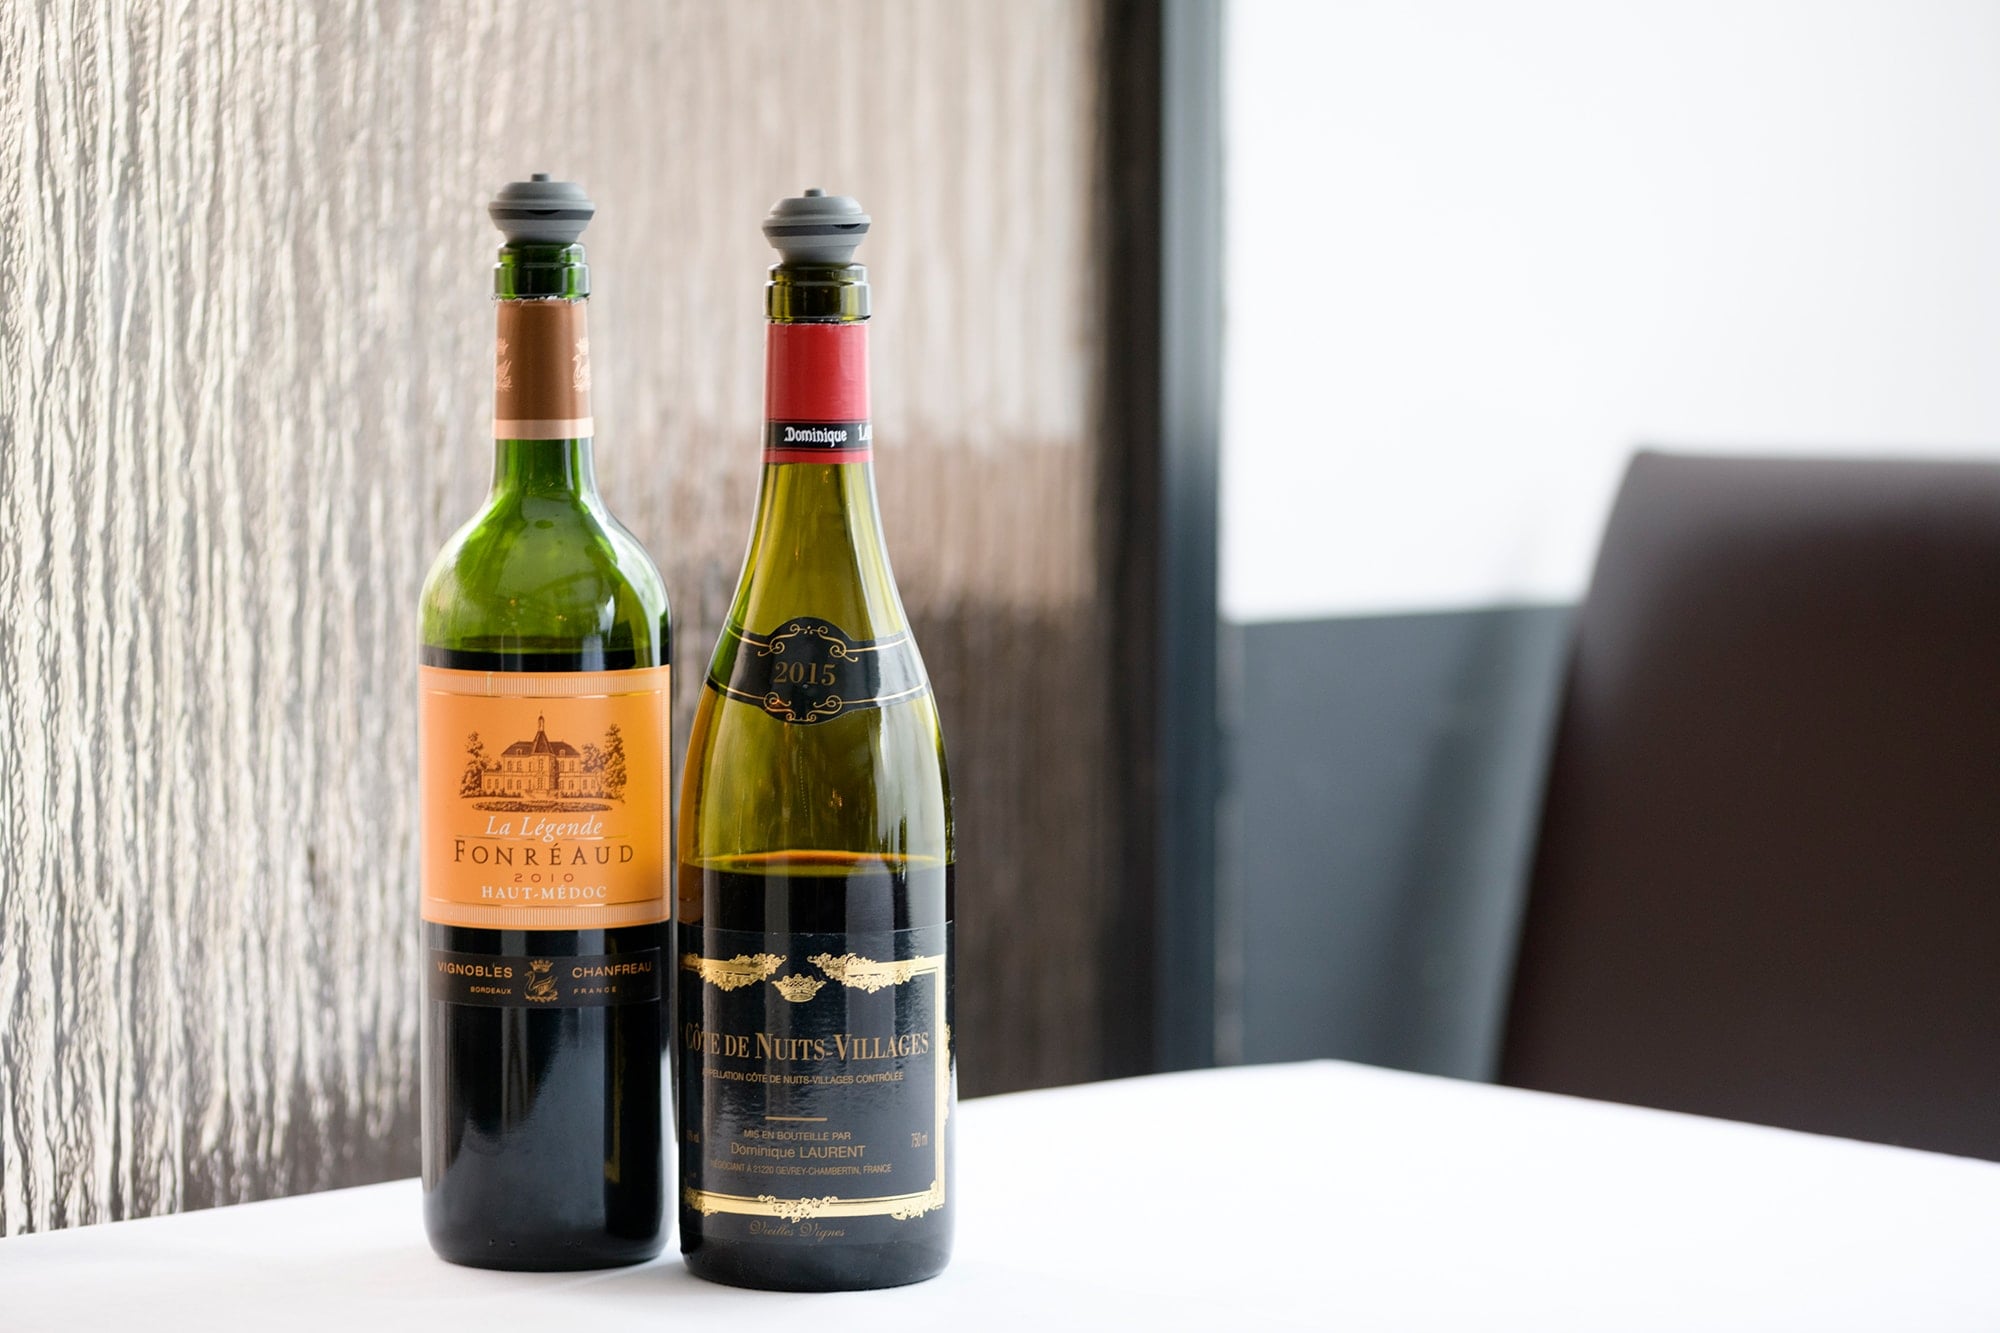 ソムリエセレクトのグラスワインは、フランス産を中心に数種類用意されていて、気軽にワインを楽しむことができる。